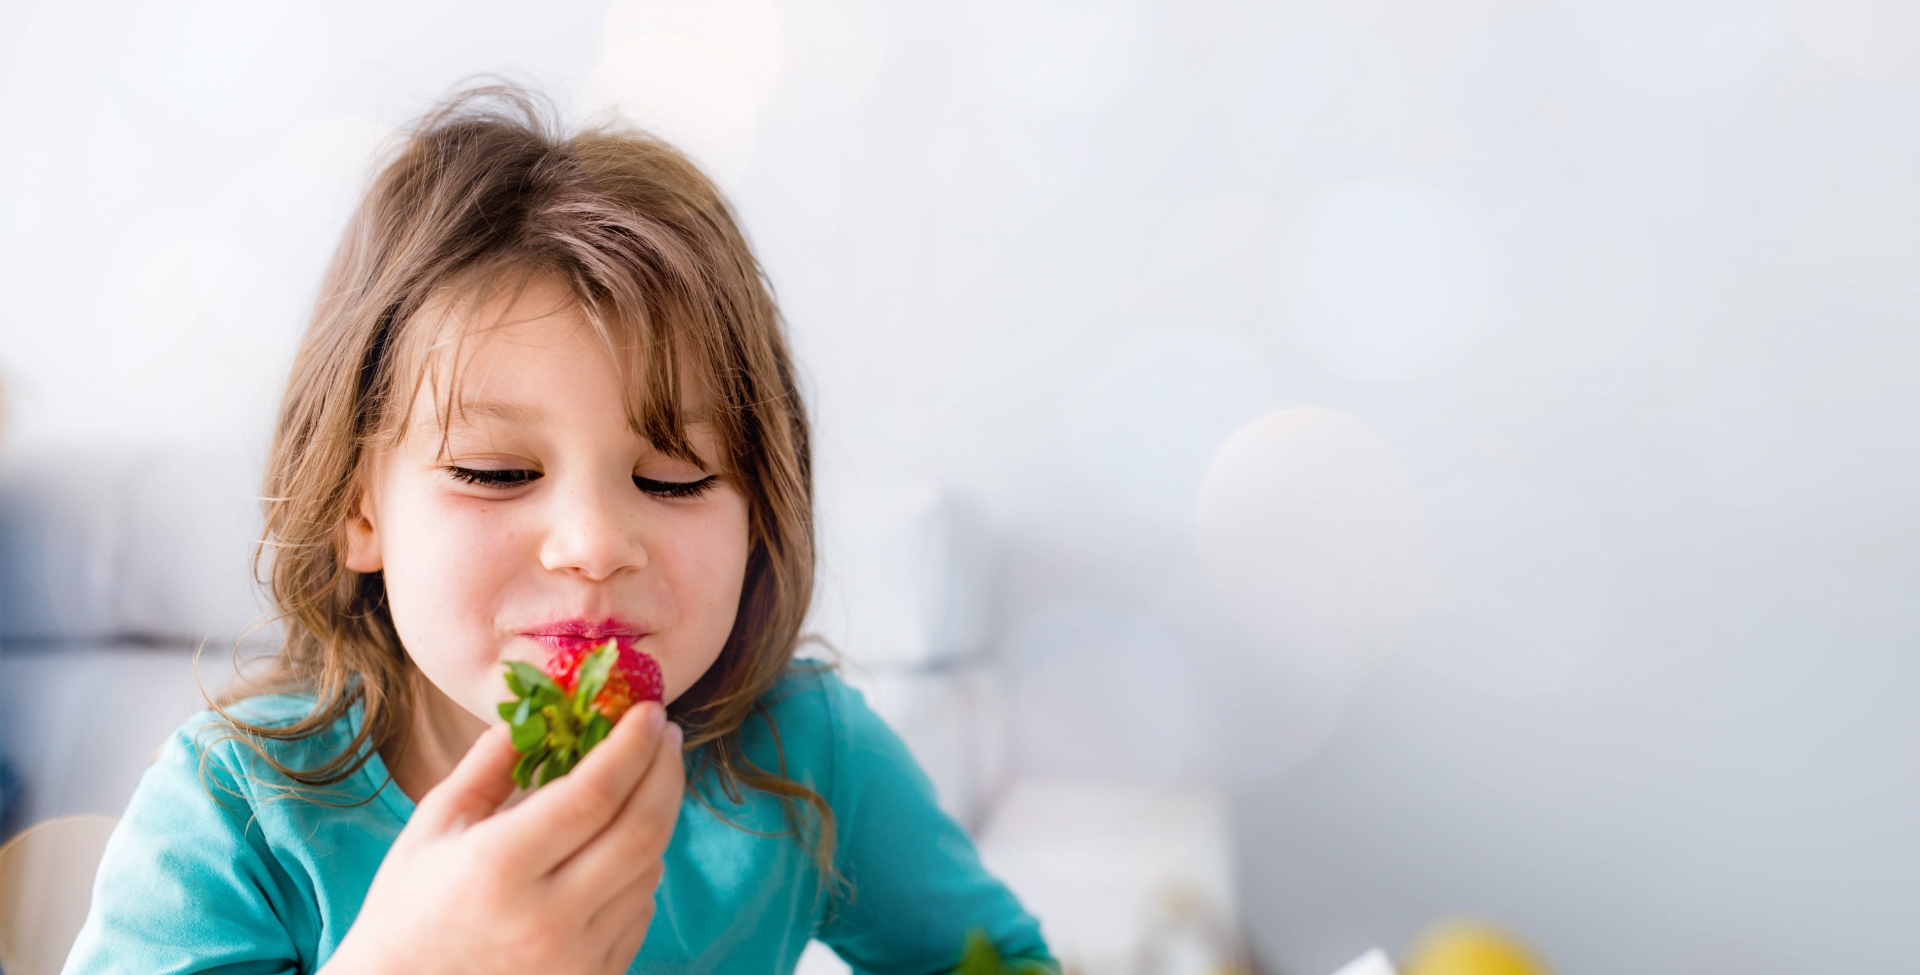 Criança com camiseta azul comendo um morango da sua alimentação saudável na infância